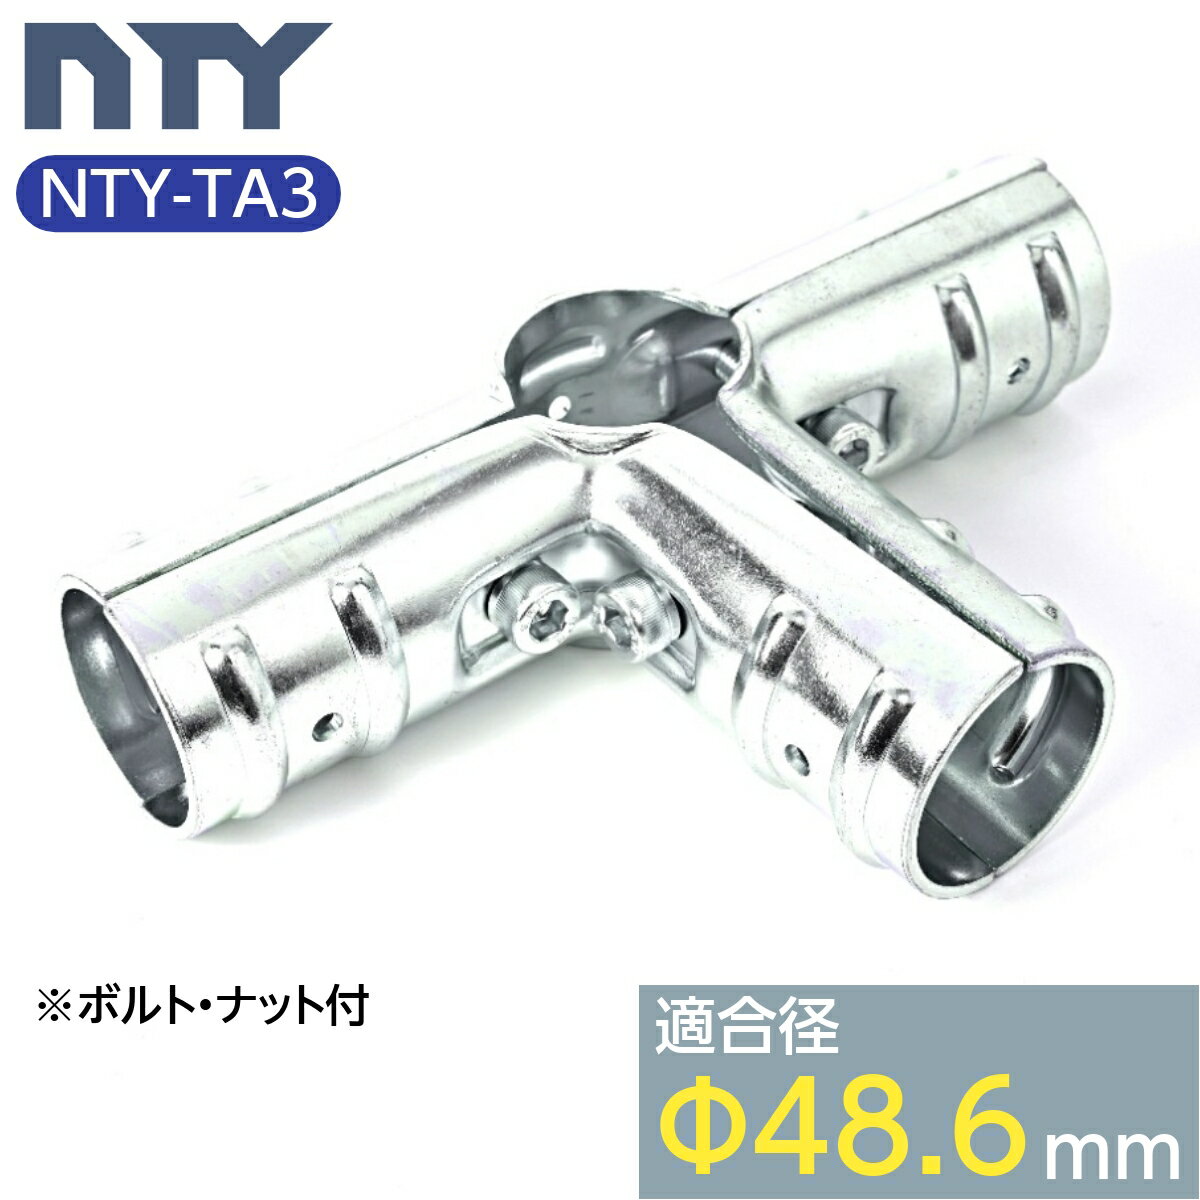 ñɥѥ 祤 NTY-TA3 48.6mm ñ ѥ  ñ³ 祤  Ҹ DIY